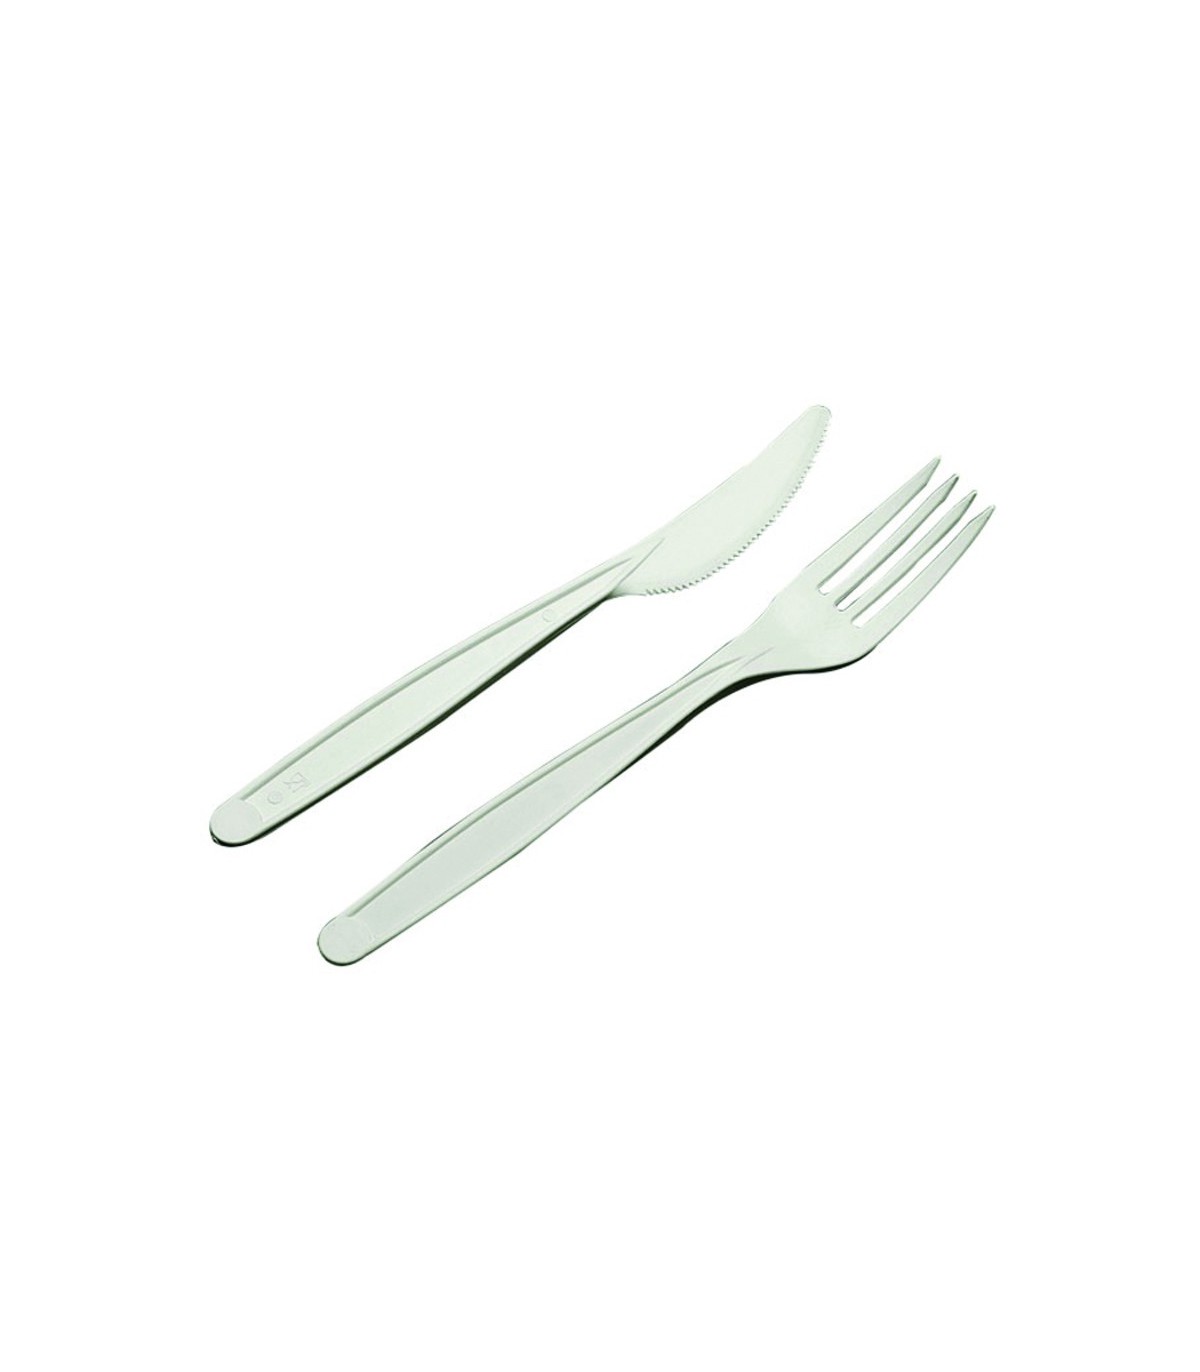 Kit couvert plastique PS transparent 2 en 1: couteau et fourchette 19,2 x 3  cm - 250 unités